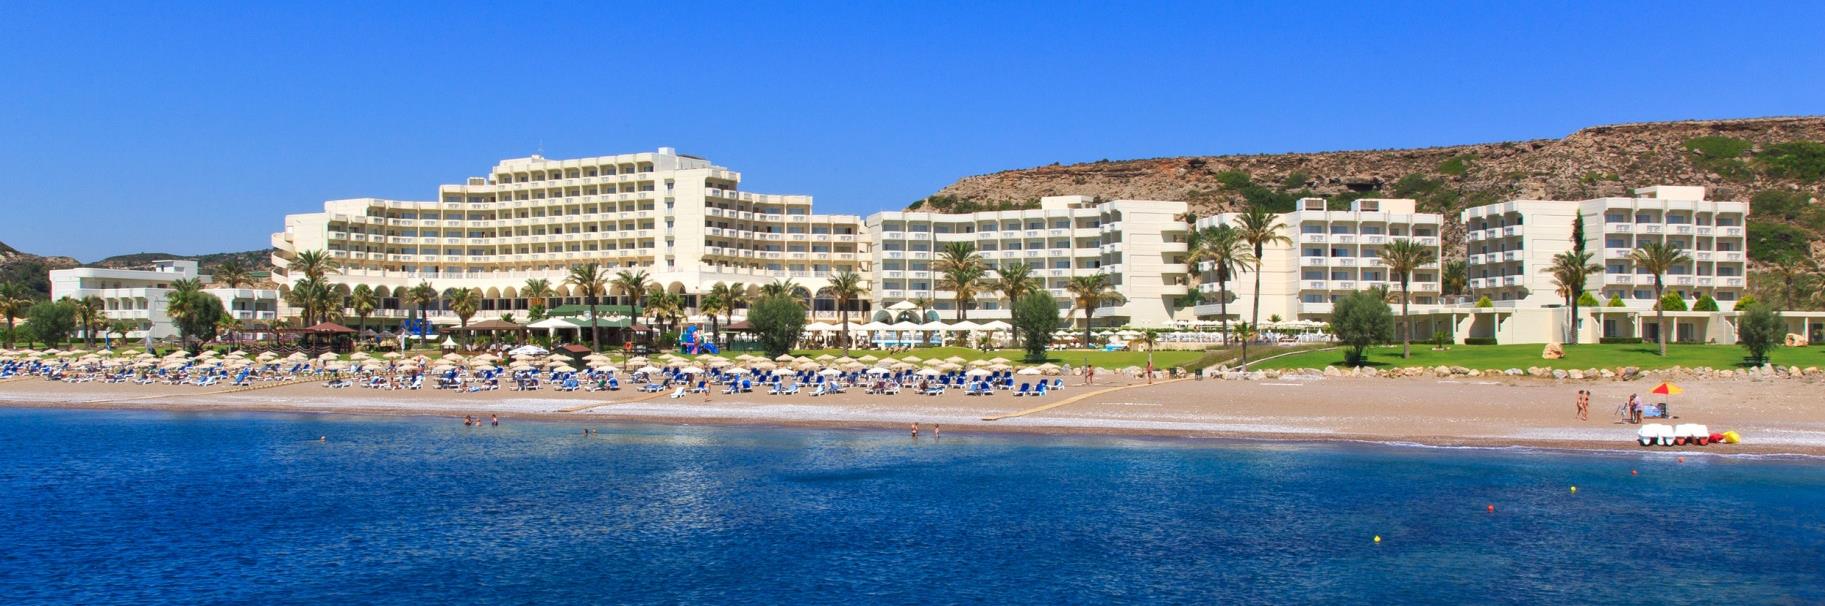 Το Rodos Palladium Leisure & Wellness, το πλέον βραβευμένο ξενοδοχείο πολυτελείας του νησιού, συνδυάζει αρμονικά την διακριτική πολυτέλεια και την αυθεντική ποιότητα.